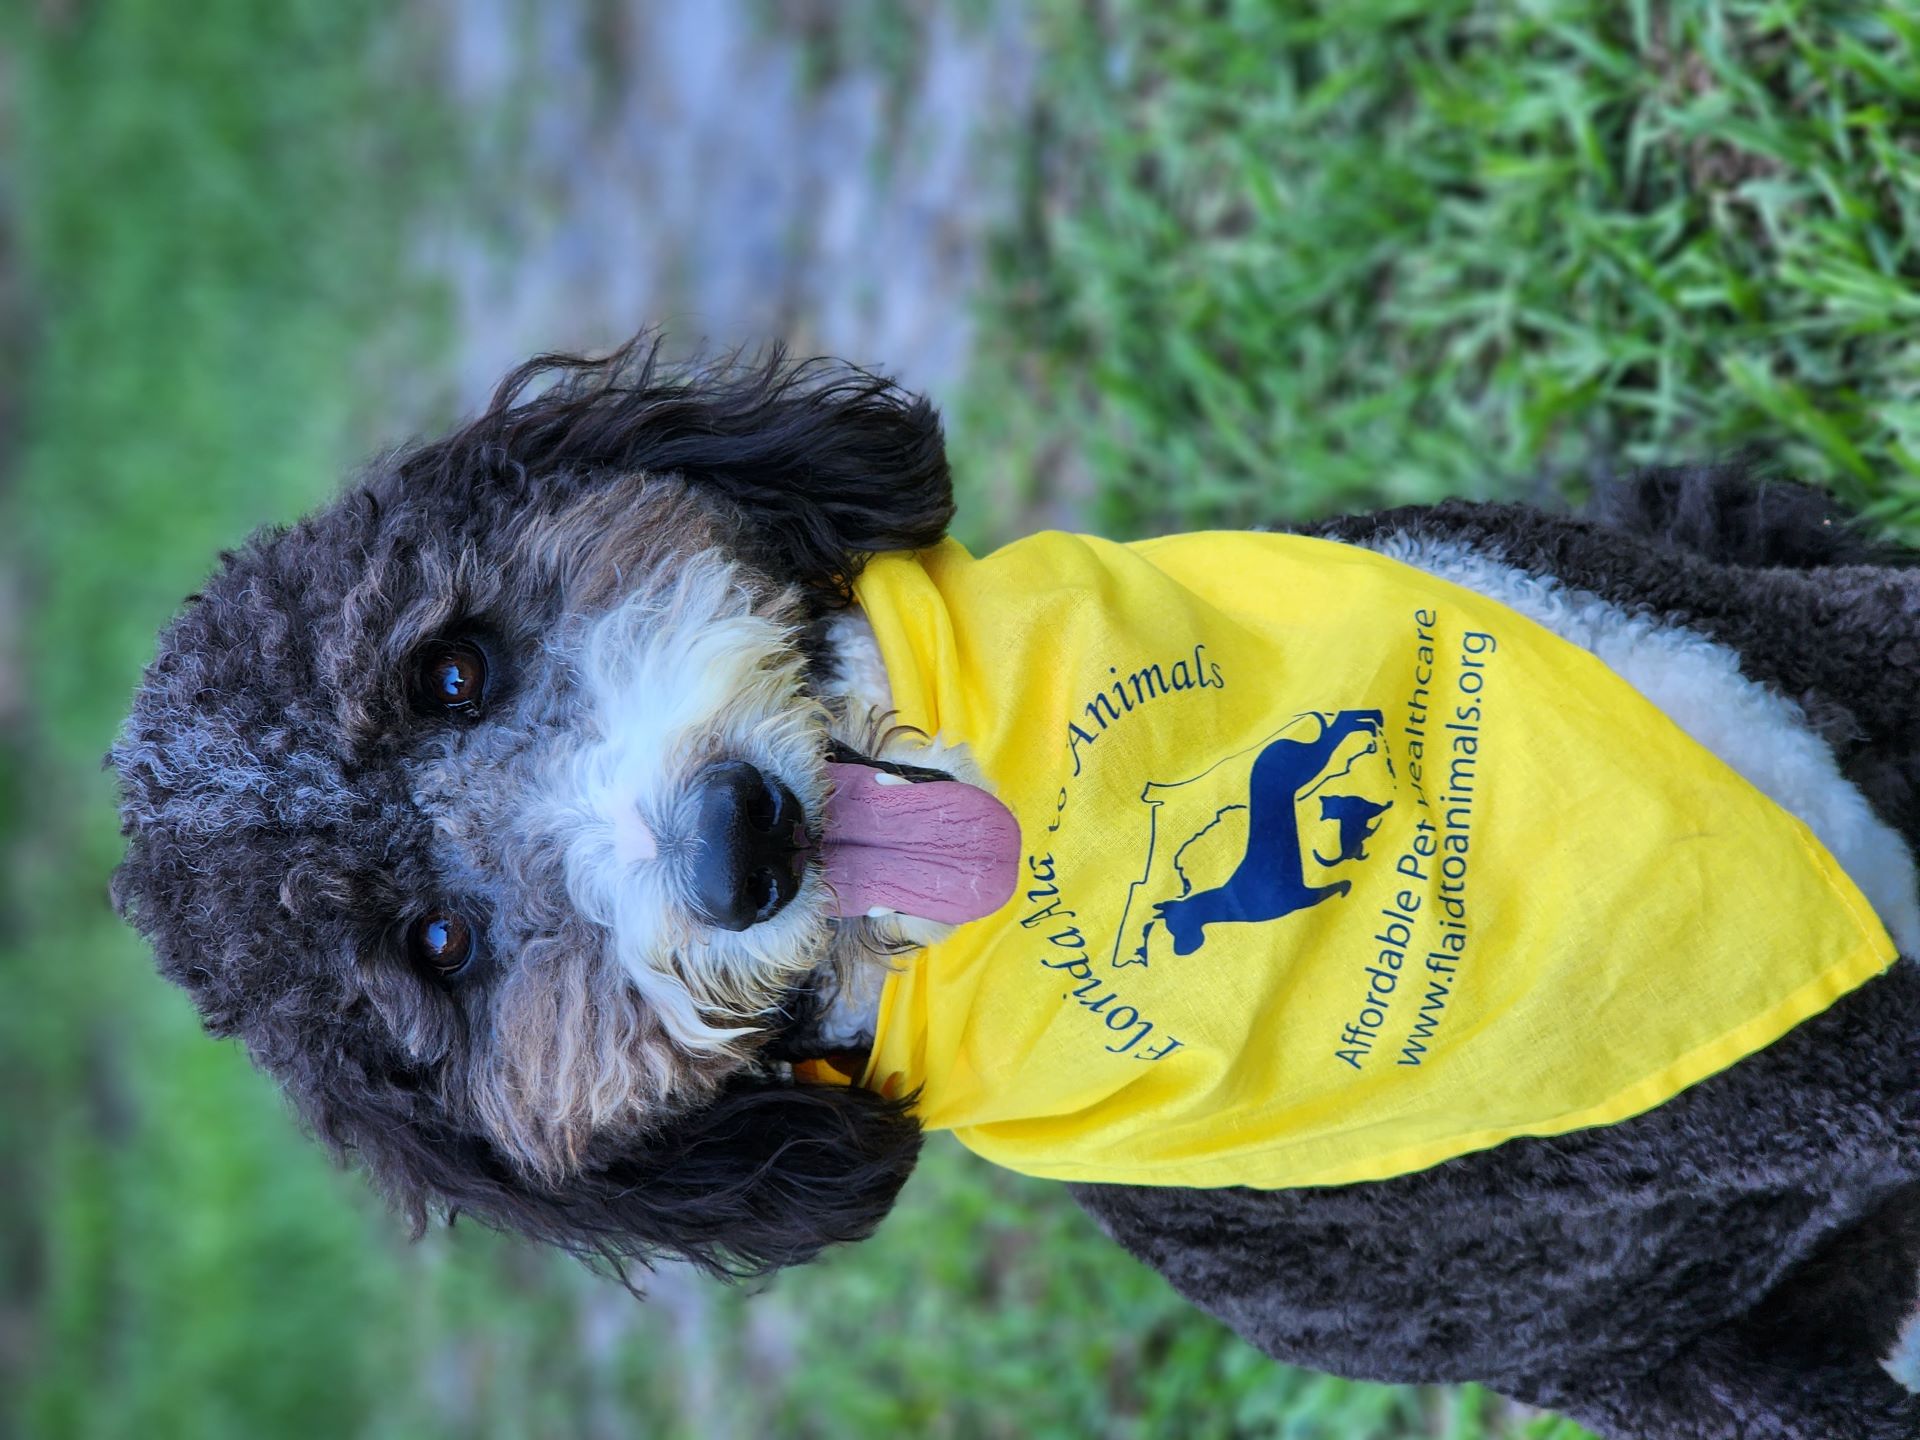 Bernadoodle dog wearing a yellow bandana